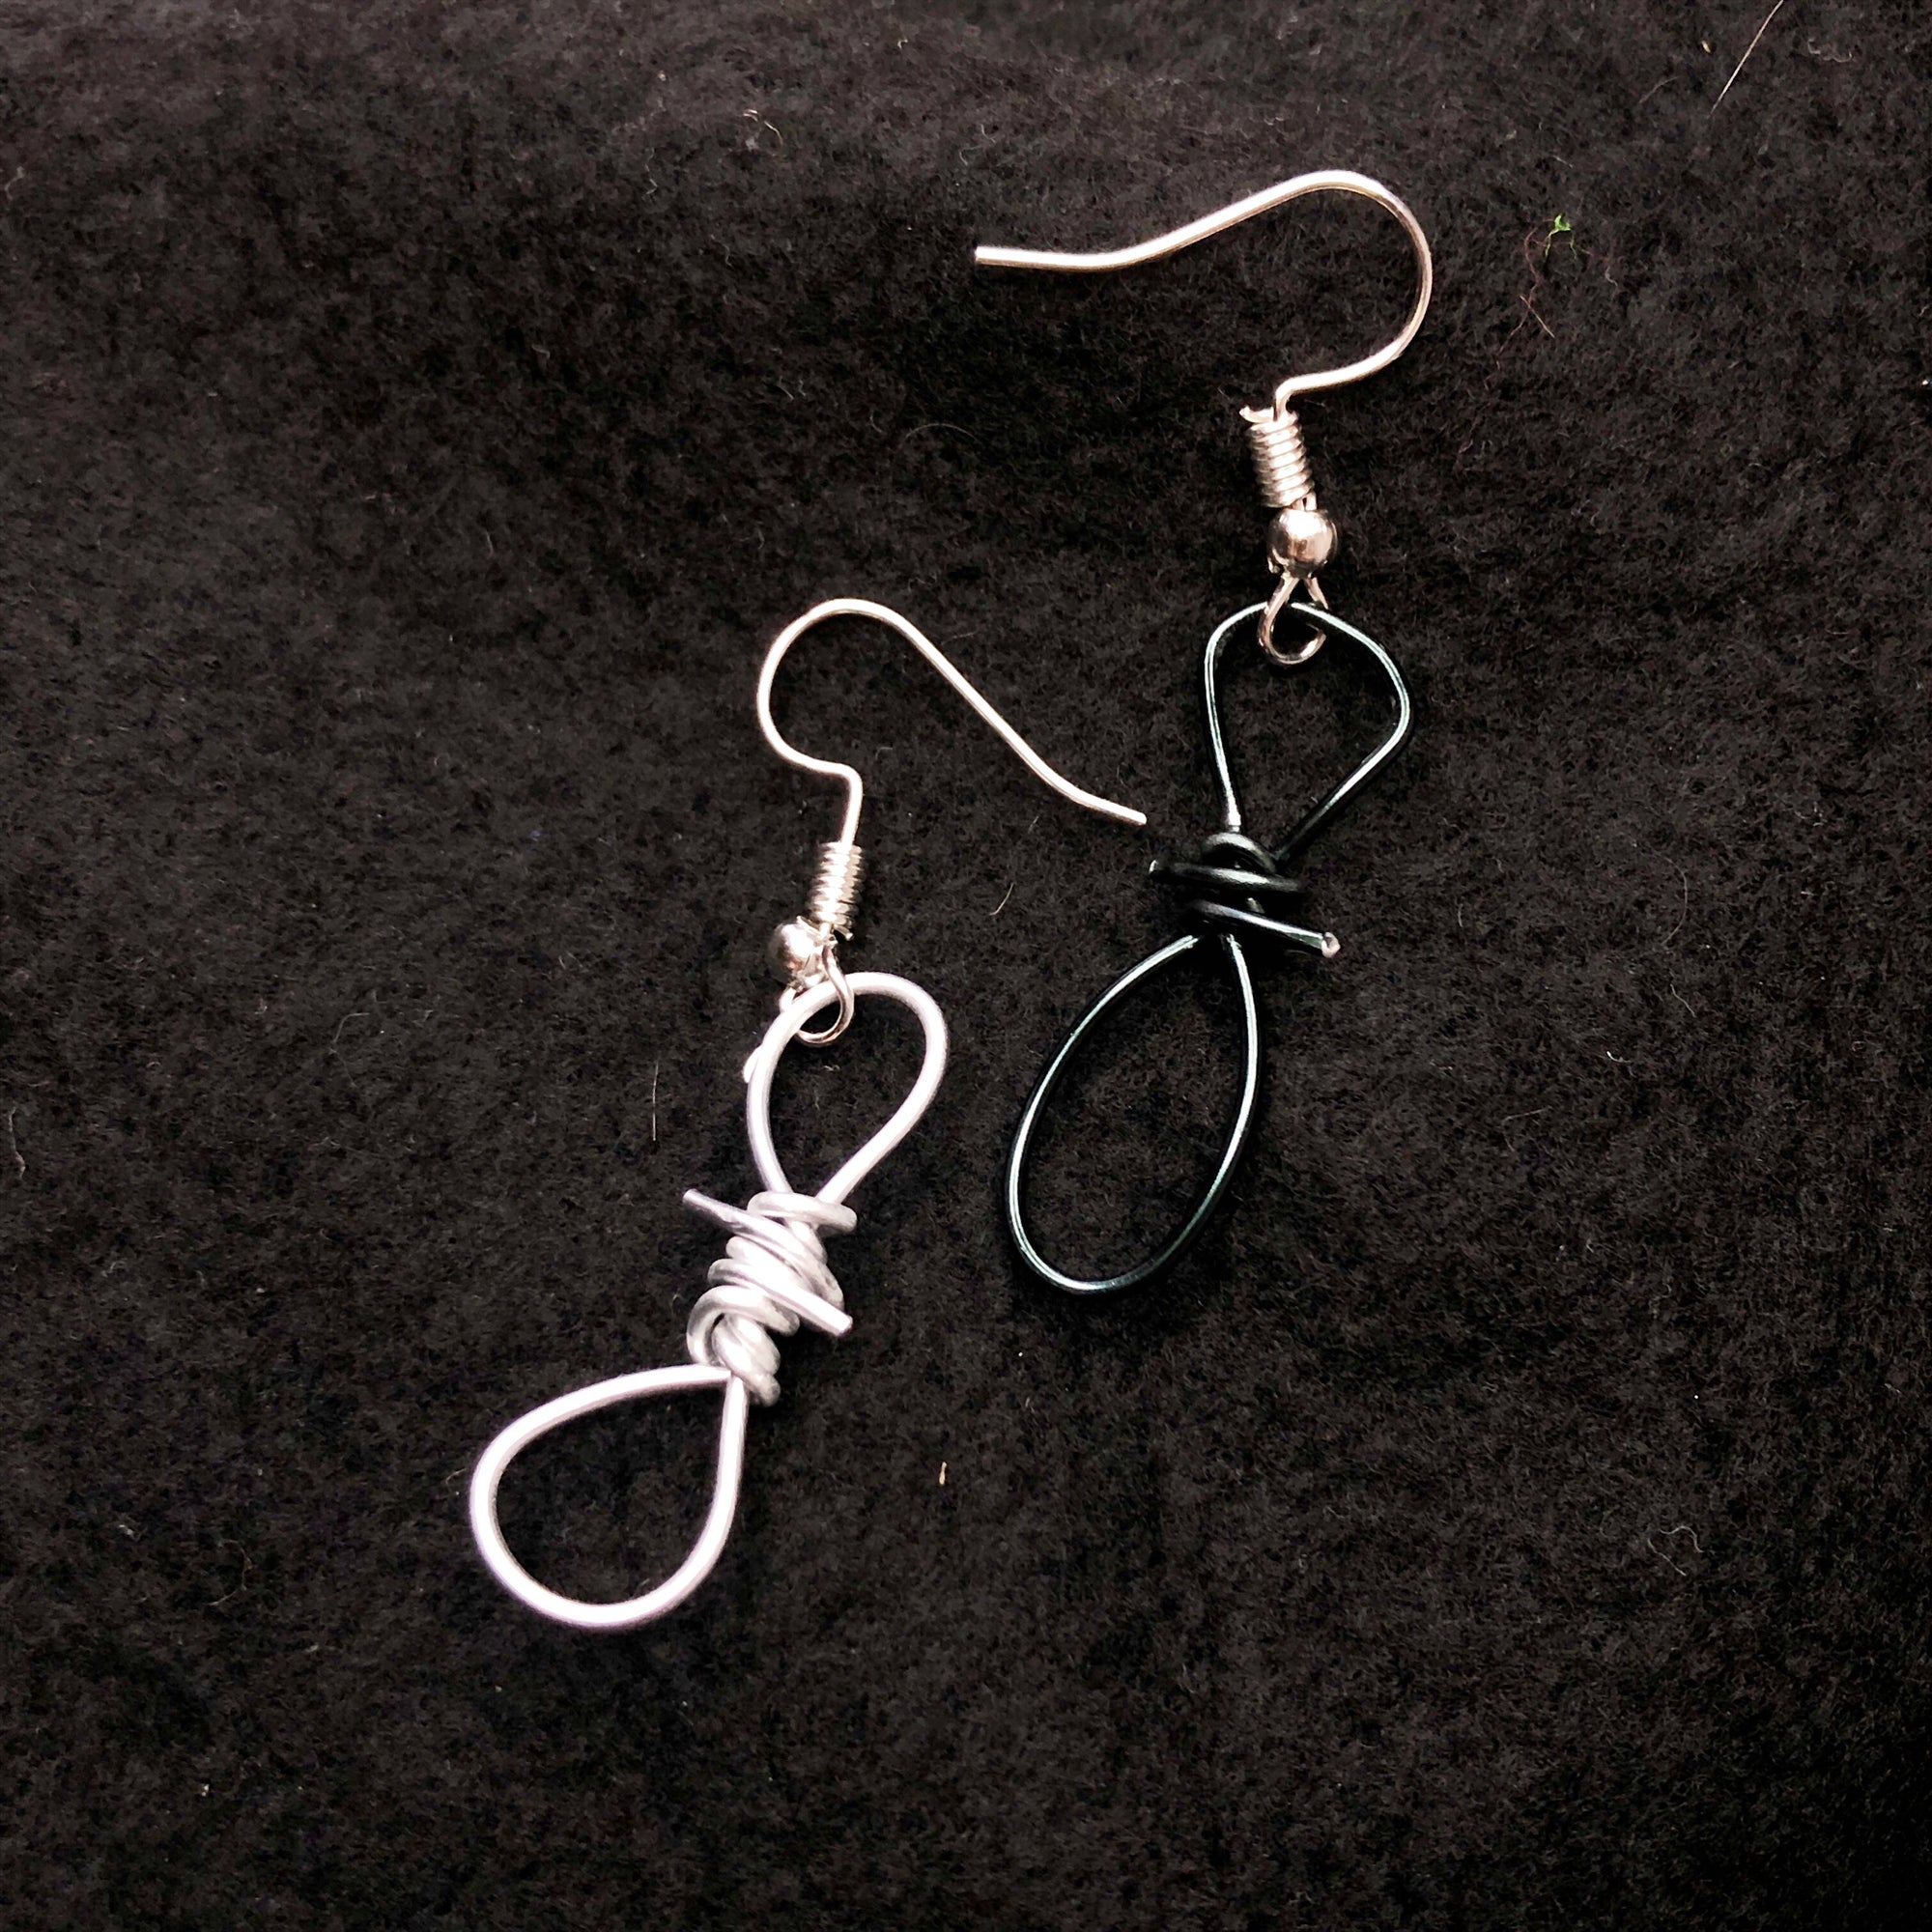 Barbed wire earrings enjoy grunge jewelry • Aesthetic earrings dangle • Men’s dangle earrings • Unusual drop earrings for men